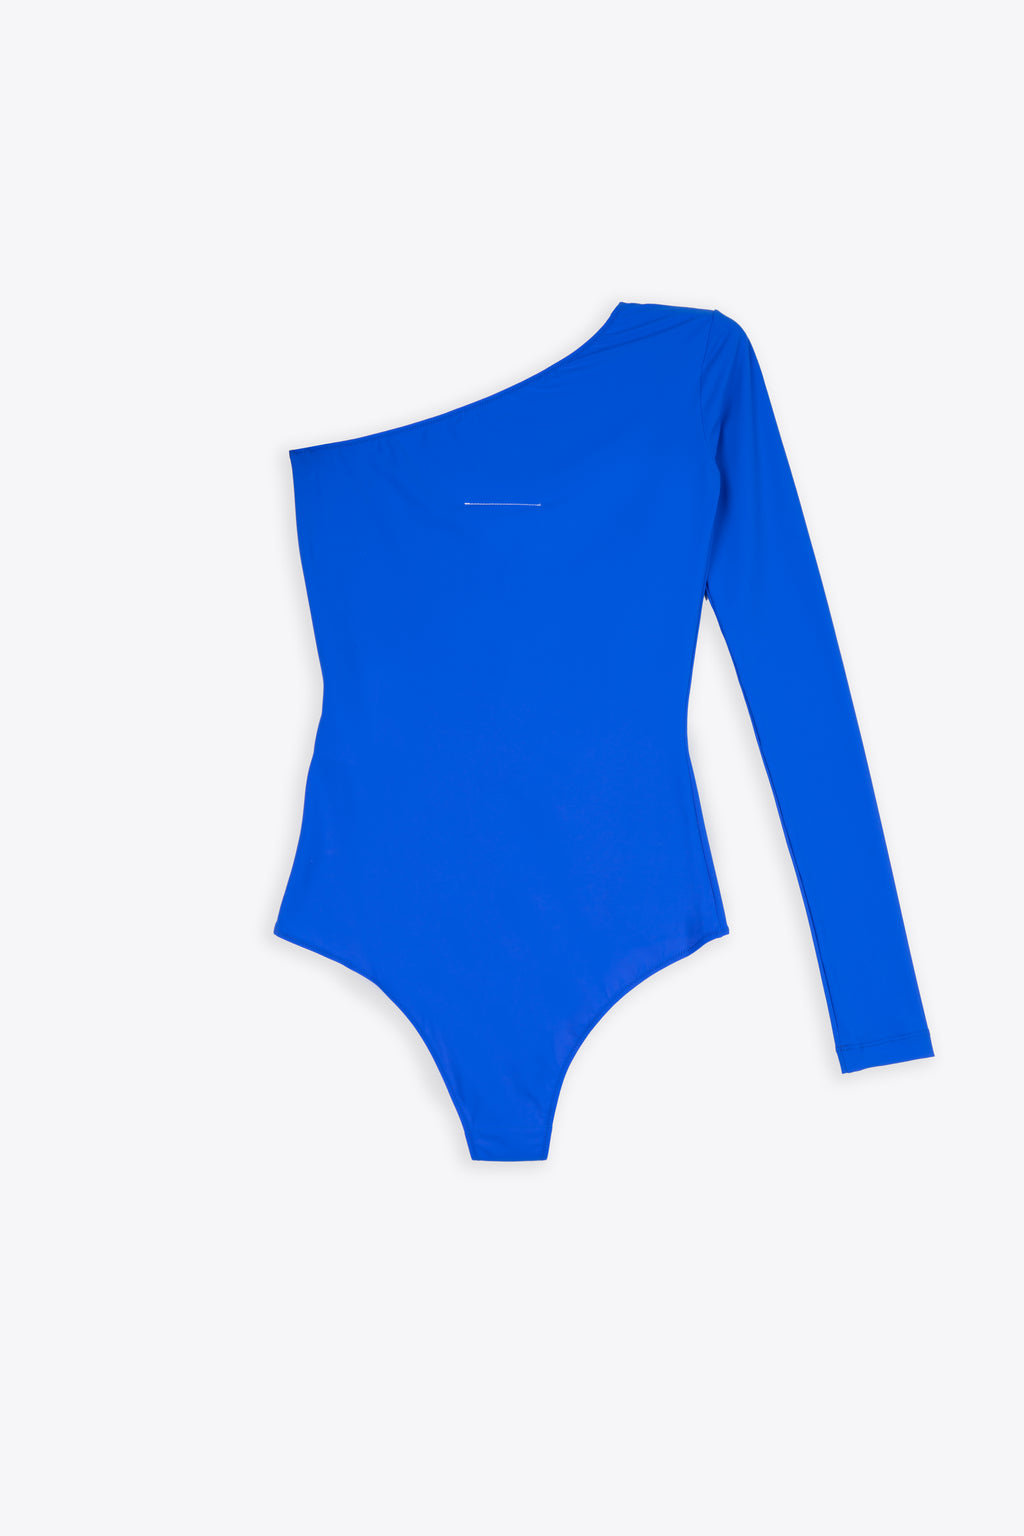 alt-image__One-shoulder-royal-blue-lycra-bodysuit